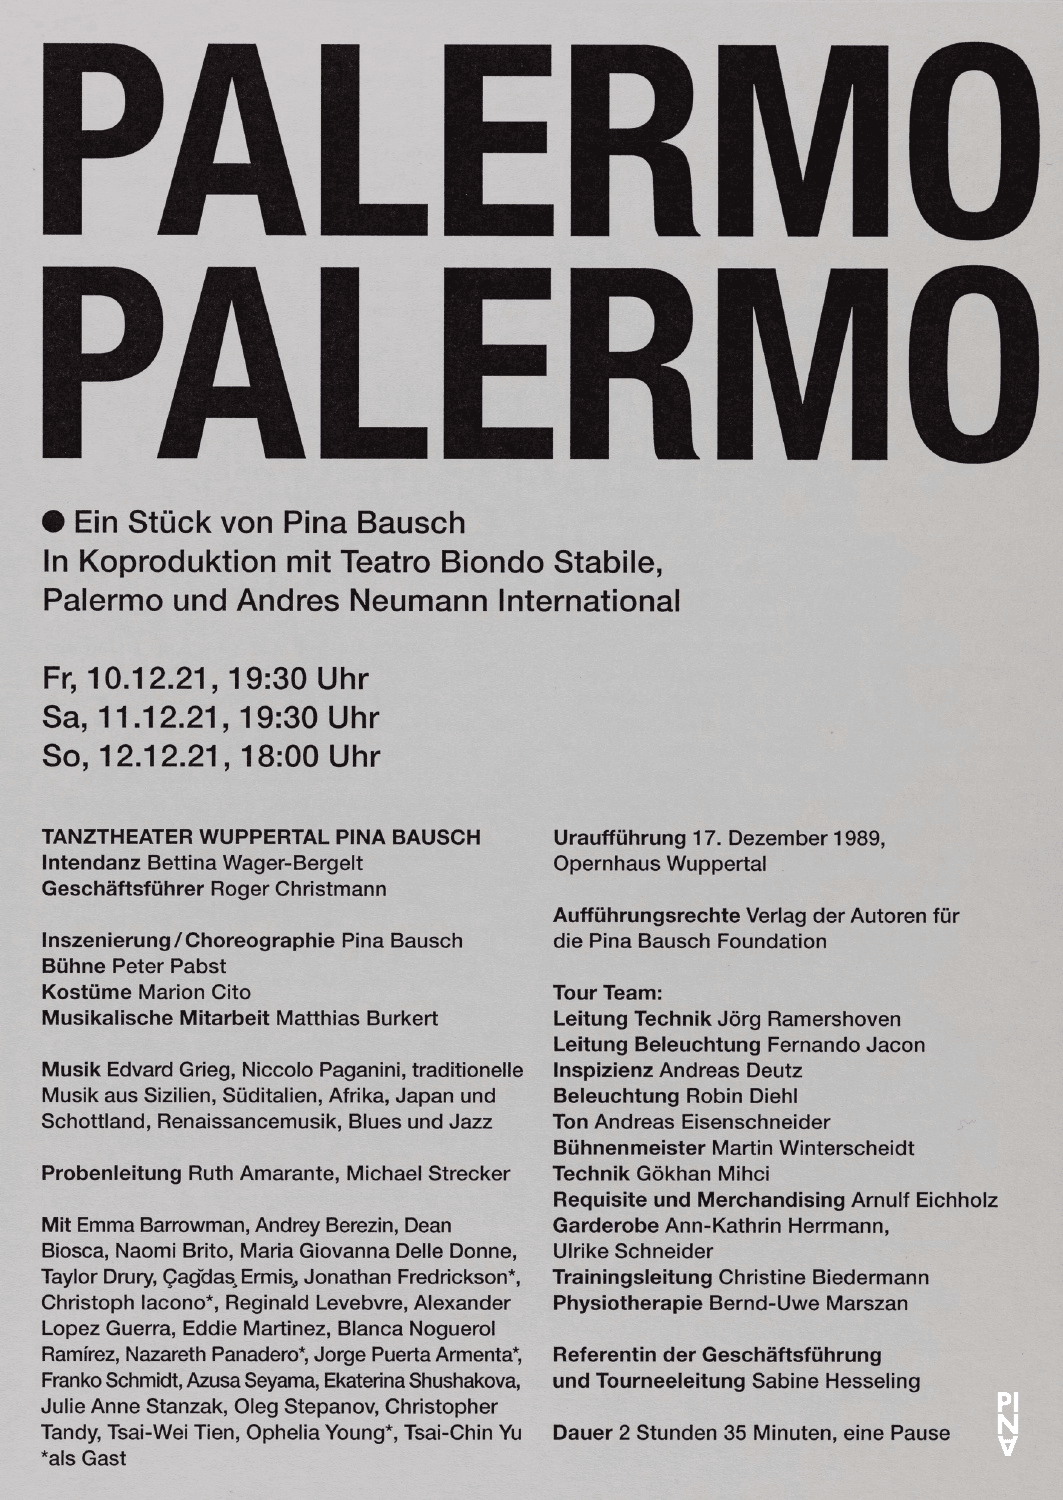 Abendzettel zu „Palermo Palermo“ von Pina Bausch mit Tanztheater Wuppertal in Ludwigshafen, 10.12.2021–12.12.2021